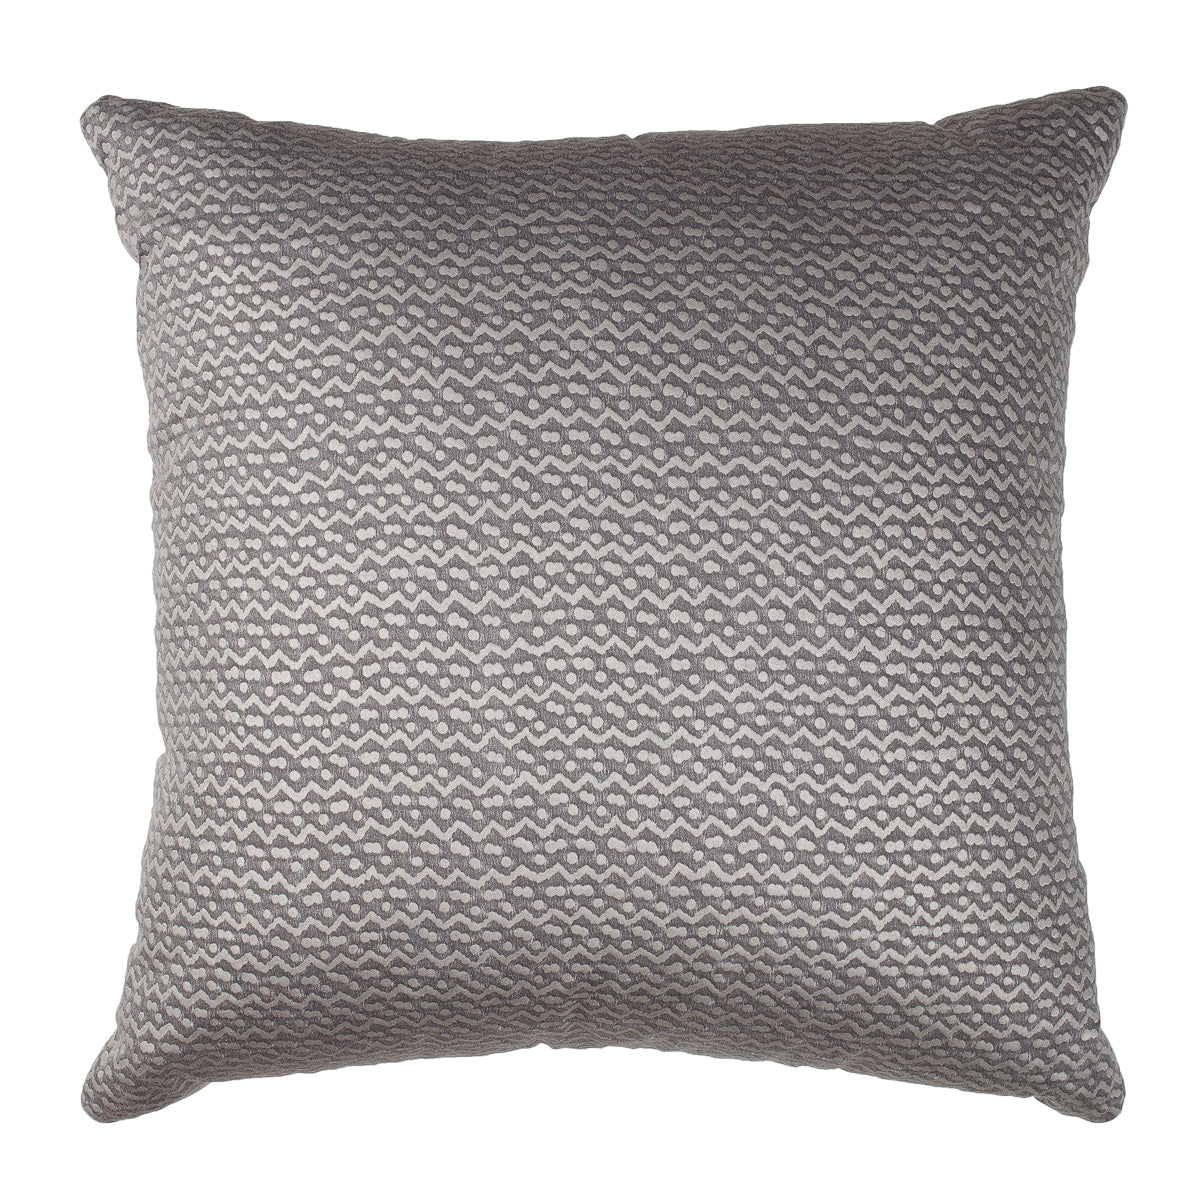 B. Viz Design - Exquisite Antique Textile Pillows and Unique Finds